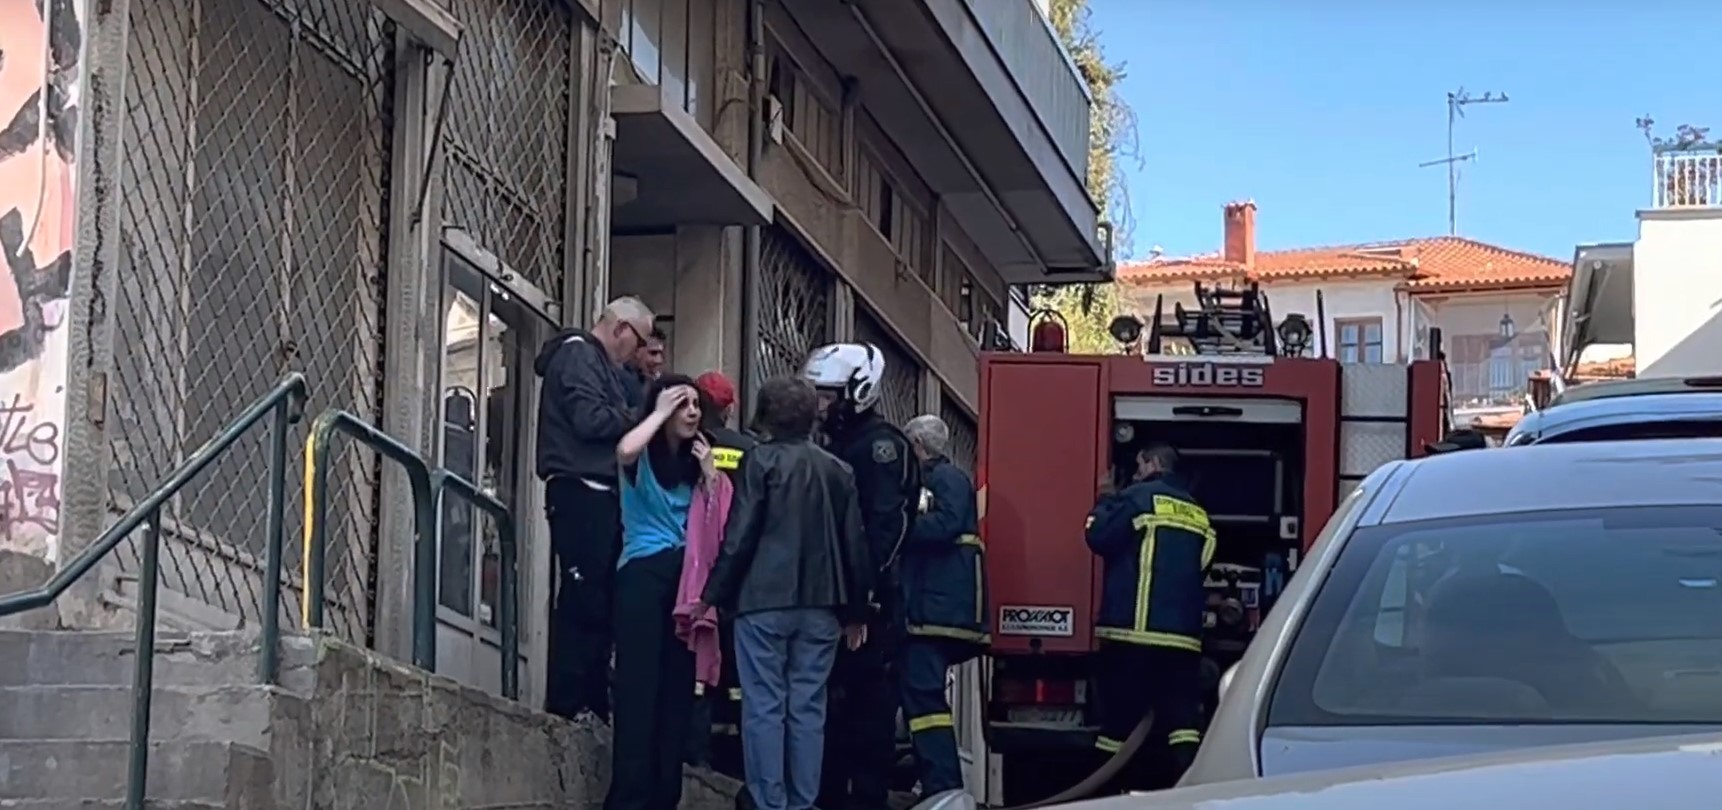 Πυρκαγιά σε διαμέρισμα στη Θεσσαλονίκη - Δύο γυναίκες στο νοσοκομείο